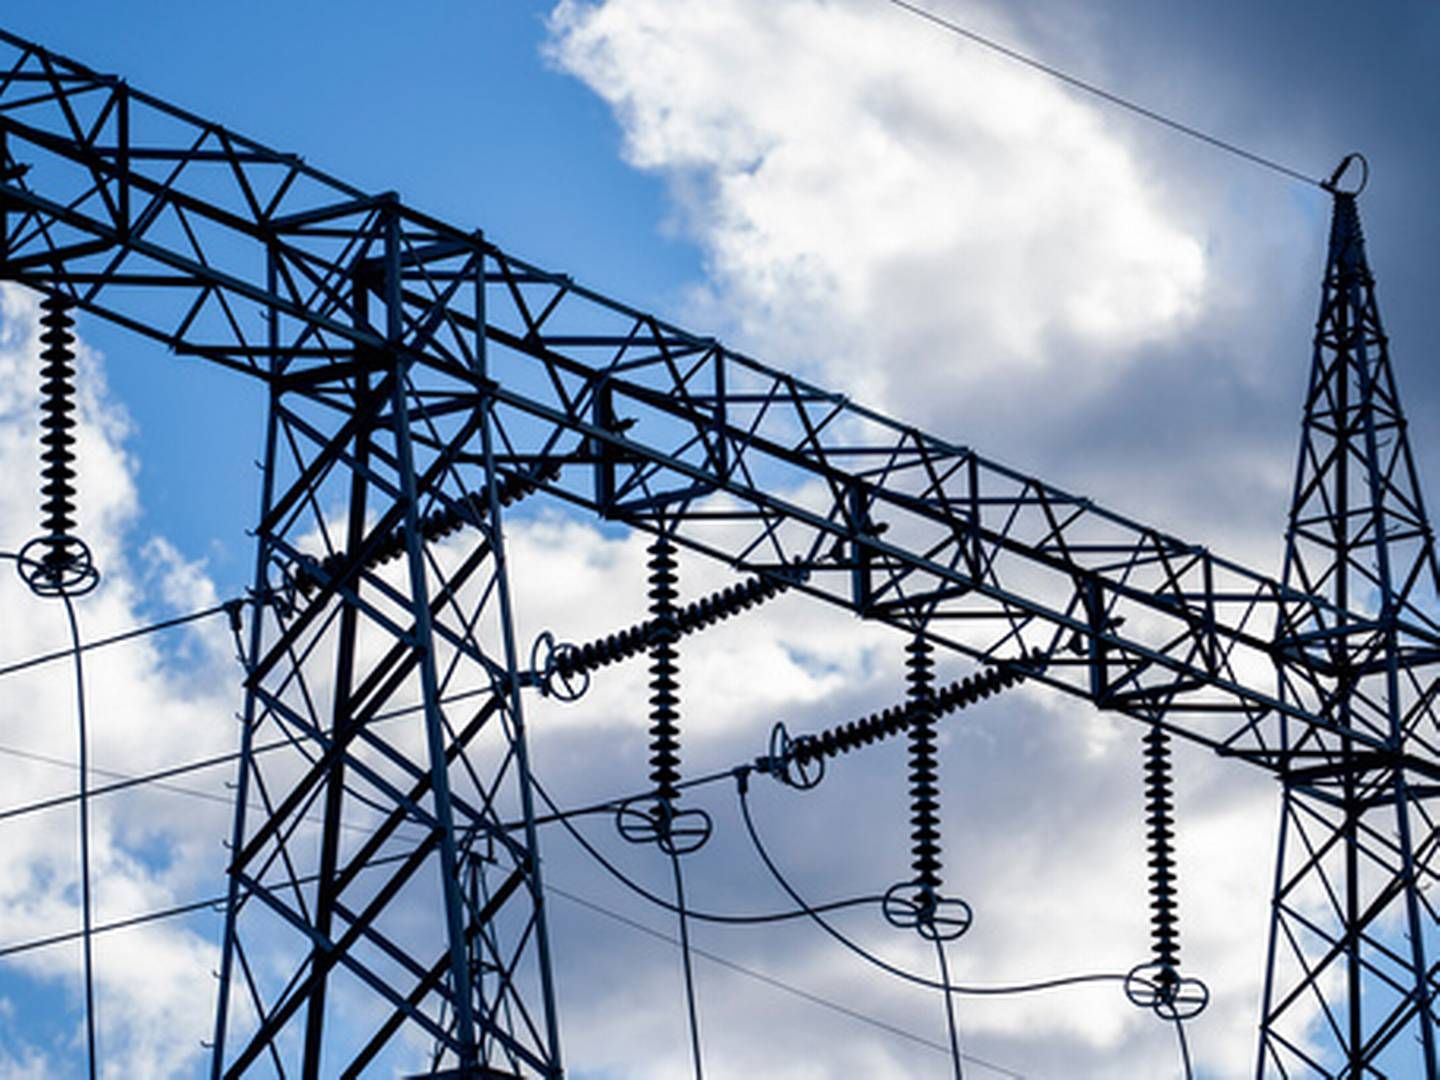 MANGE BYTTER: 77.000 byttet strømselskap i september. | Foto: Javad Parsa / NTB